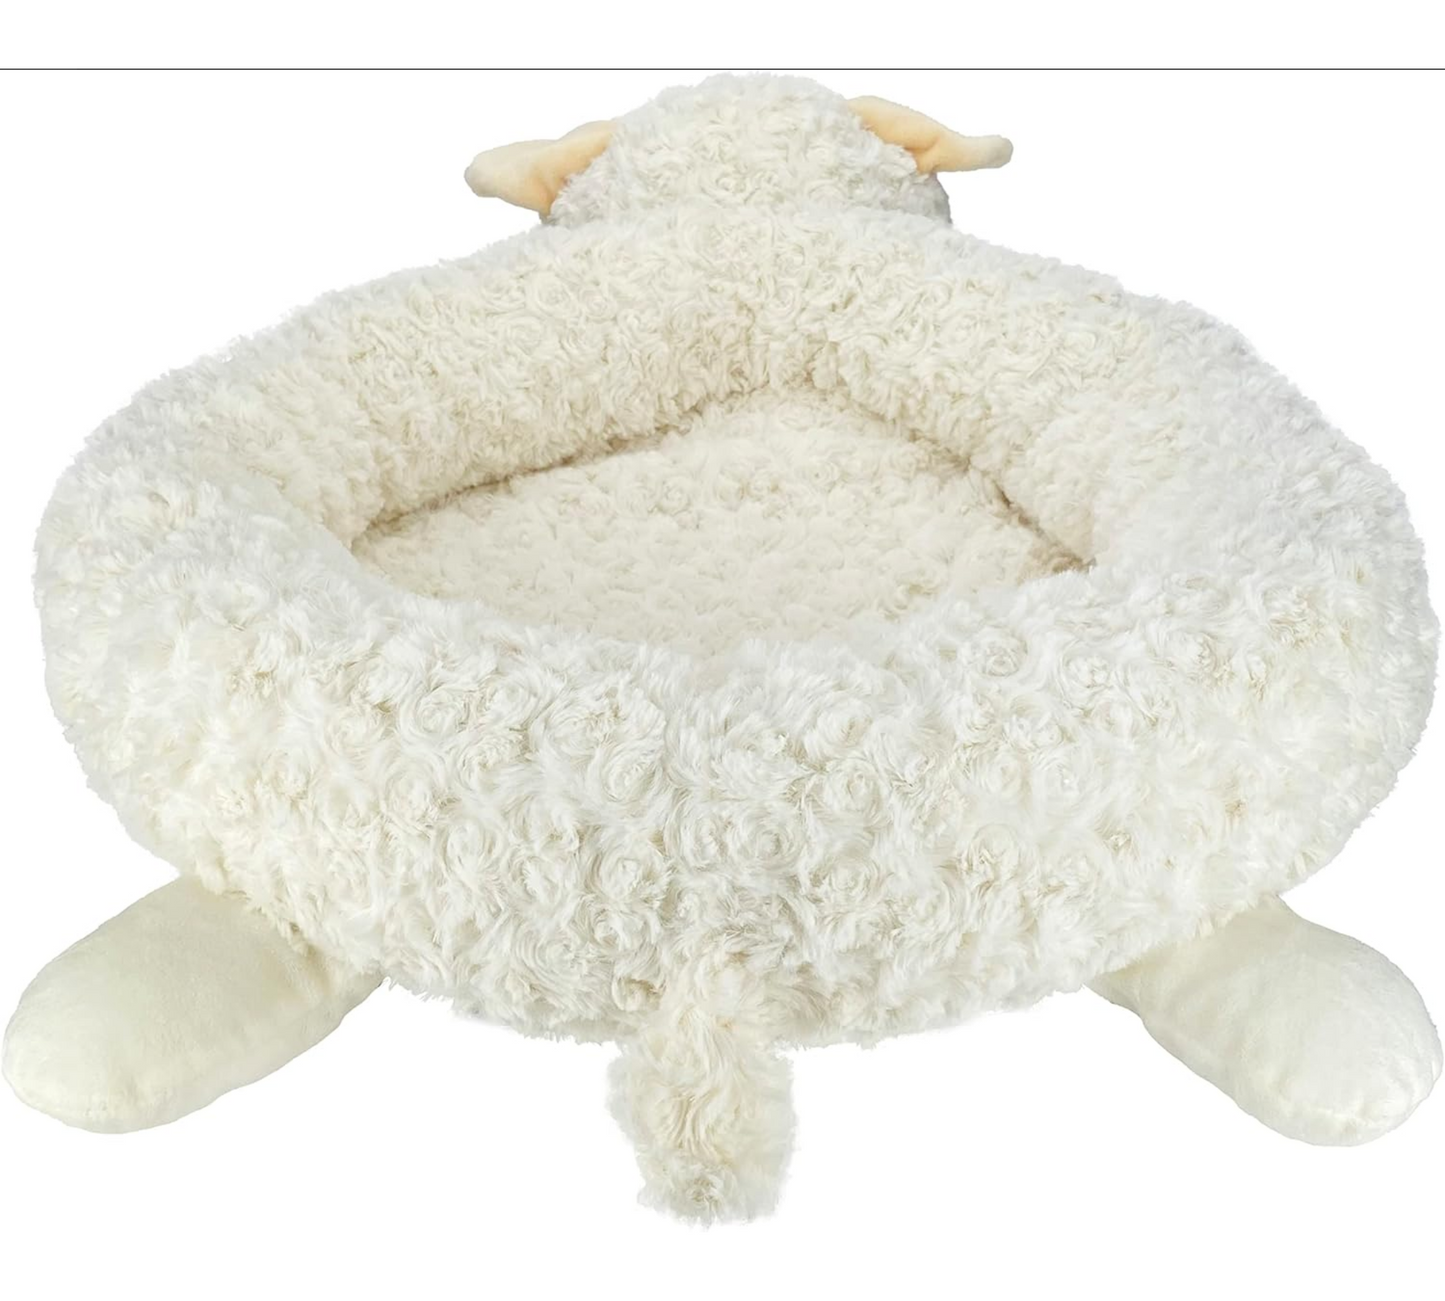 Lamb Chop Dog Bed: Comfortable and Stylish